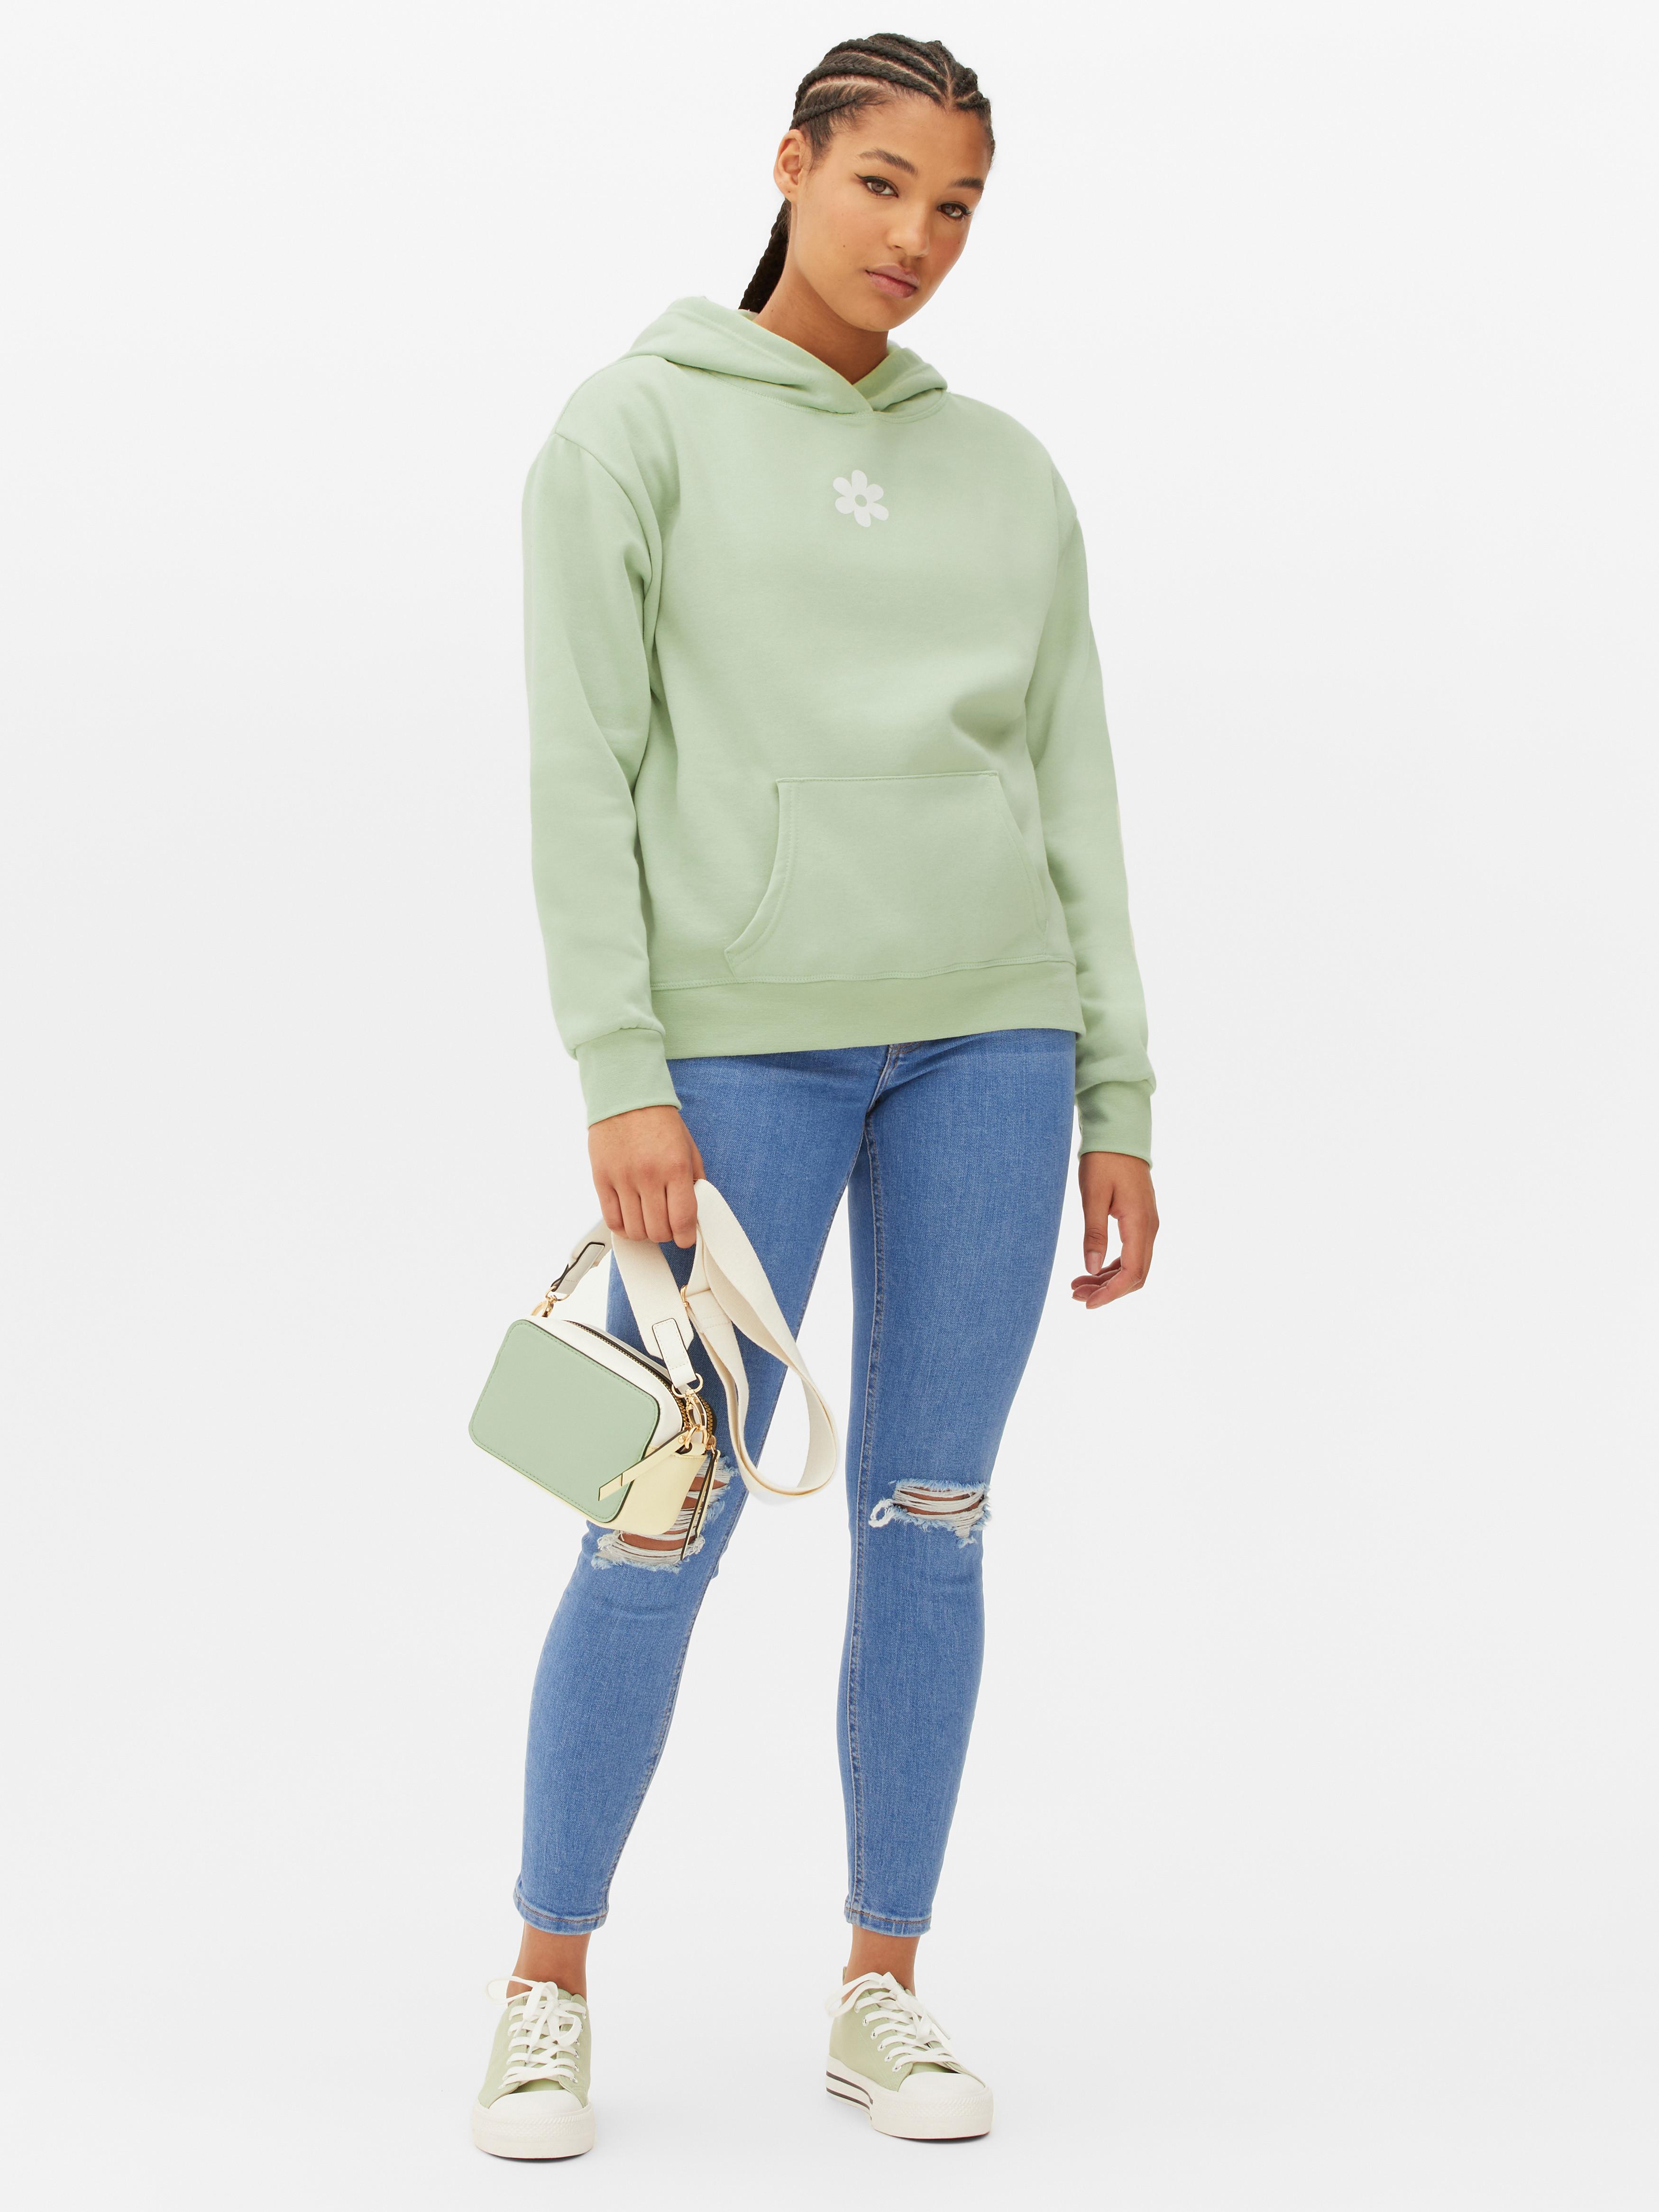 Women's Hoodies & Sweatshirts | Oversized, Cropped, Zip Up | Primark